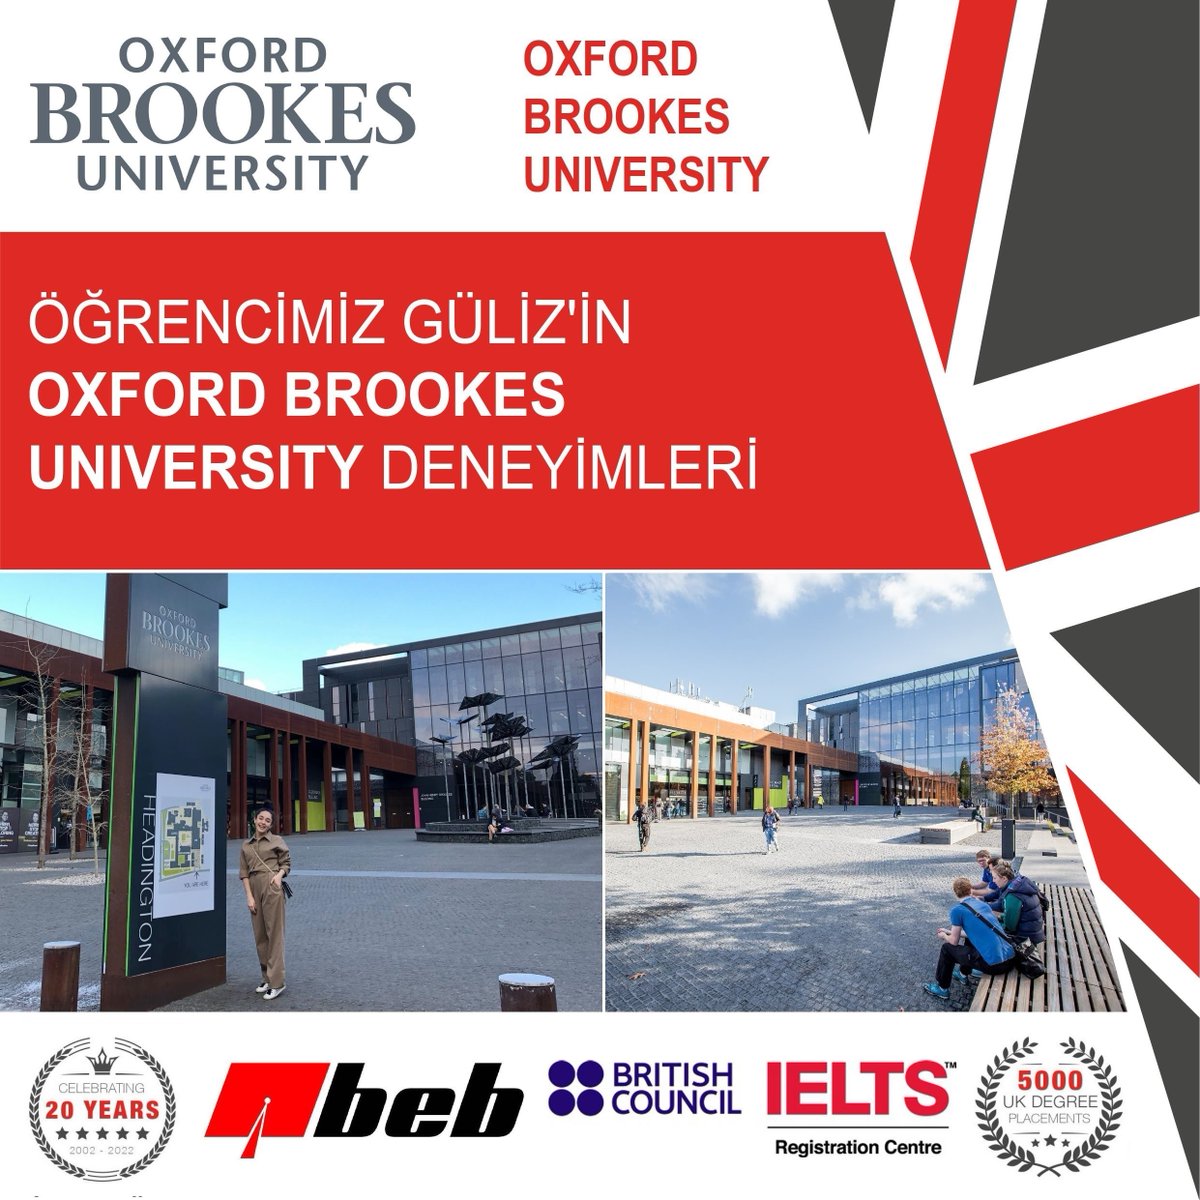 Öğrencimiz Güliz'in #OxfordBrookesUniversity Deneyimleri'ni paylaştığı yazısına aşağıdaki linkten ulaşabilirsiniz. 🤩✨
instagram.com/p/CdLuuJDL-zF/
#beb #oxford #oxfordbrookes